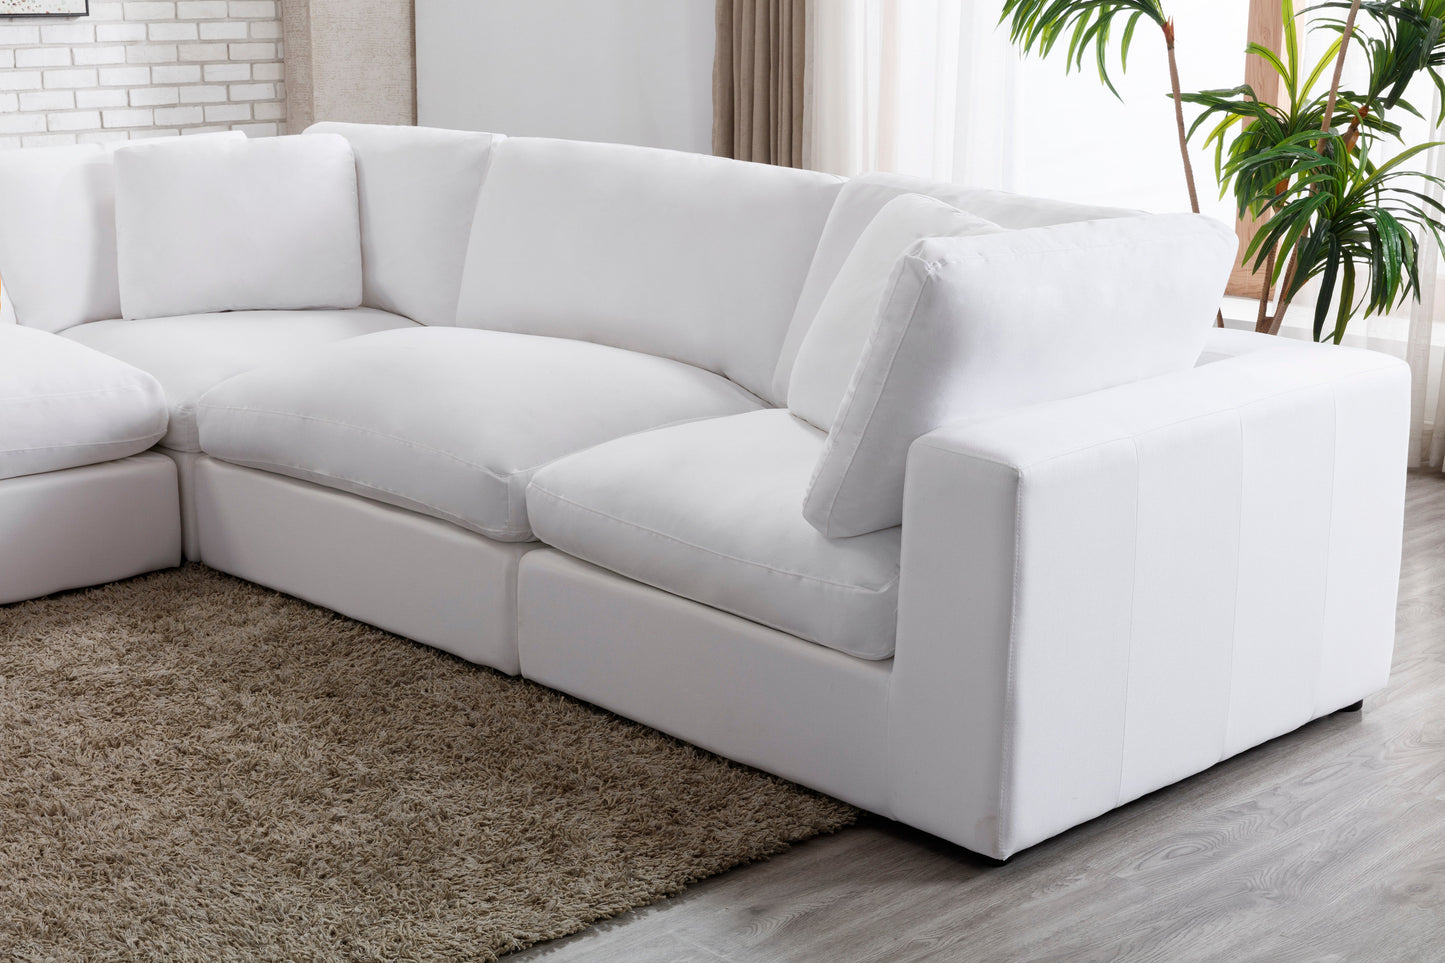 Rivas Contemporary Feather Fill 8-Piece Modular Sectional Sofa, White